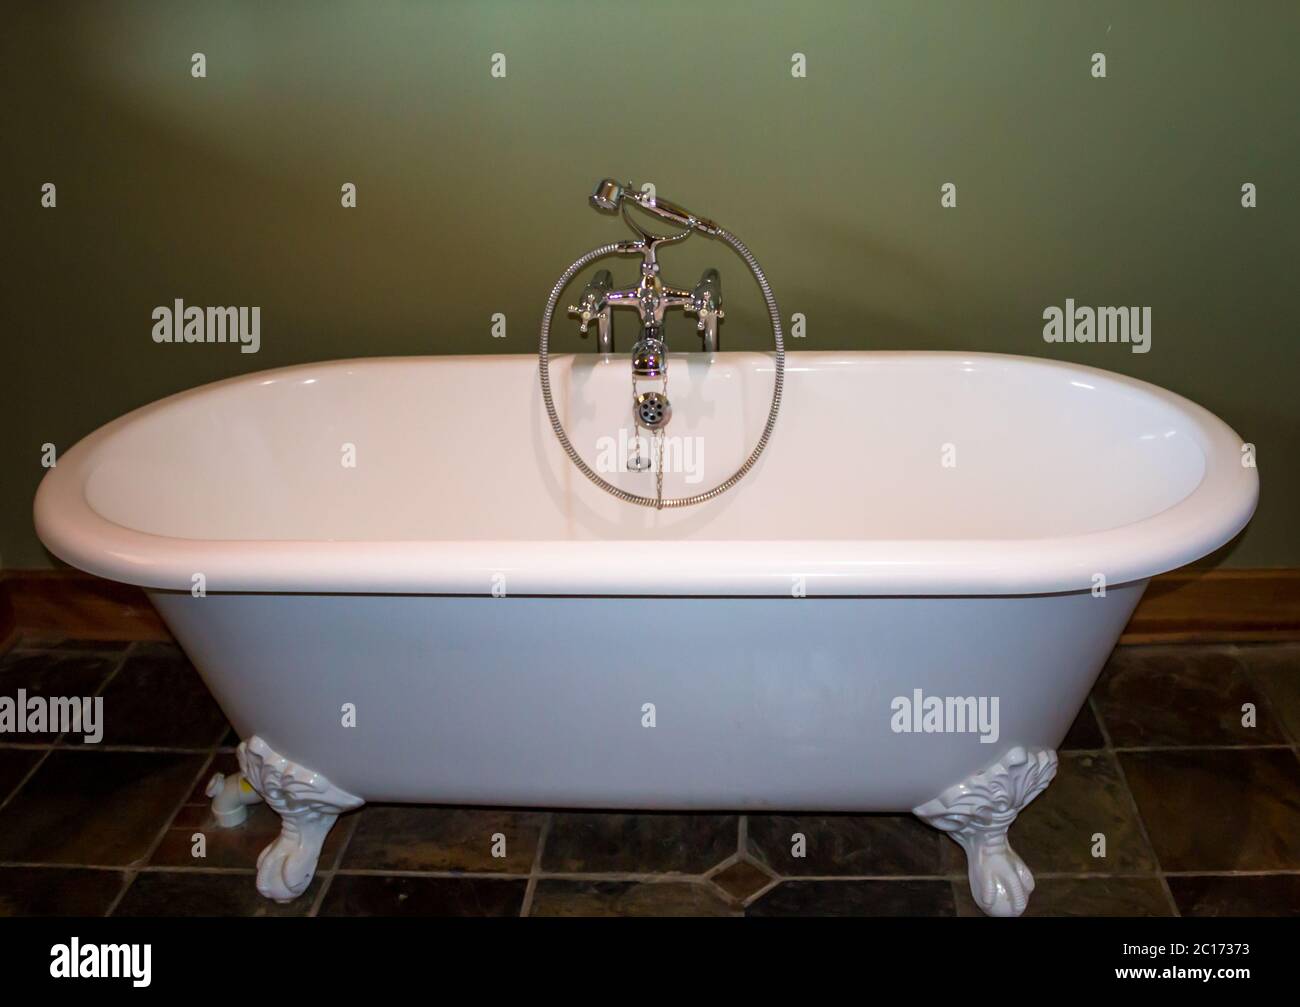 Vasca da bagno con sfera bianca e artiglio in stile vintage Foto Stock